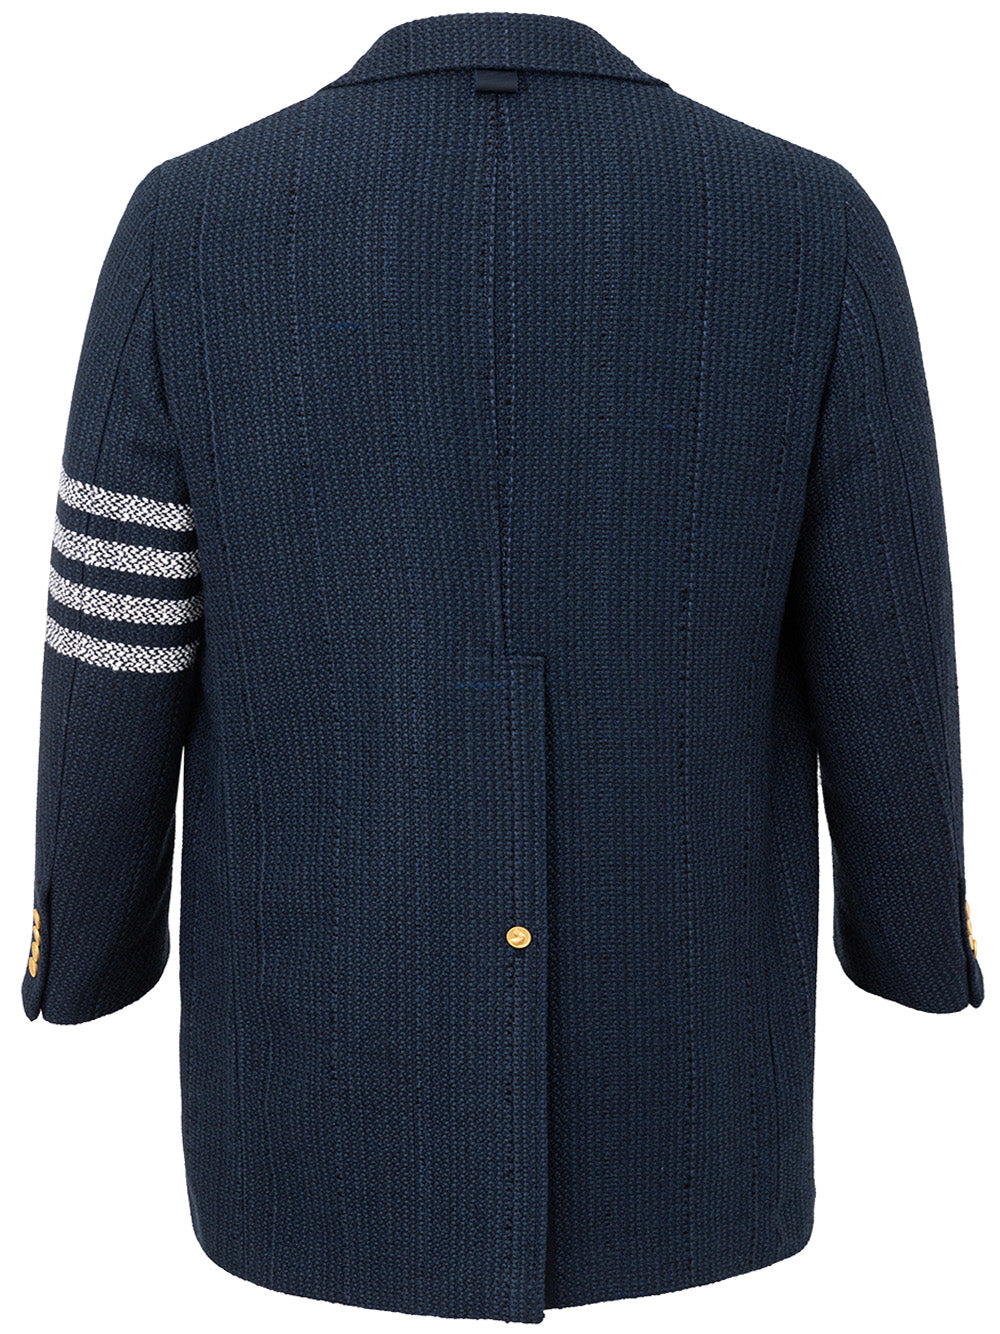 Chesterfield Overcoat Blu in Tweed Thom Browne